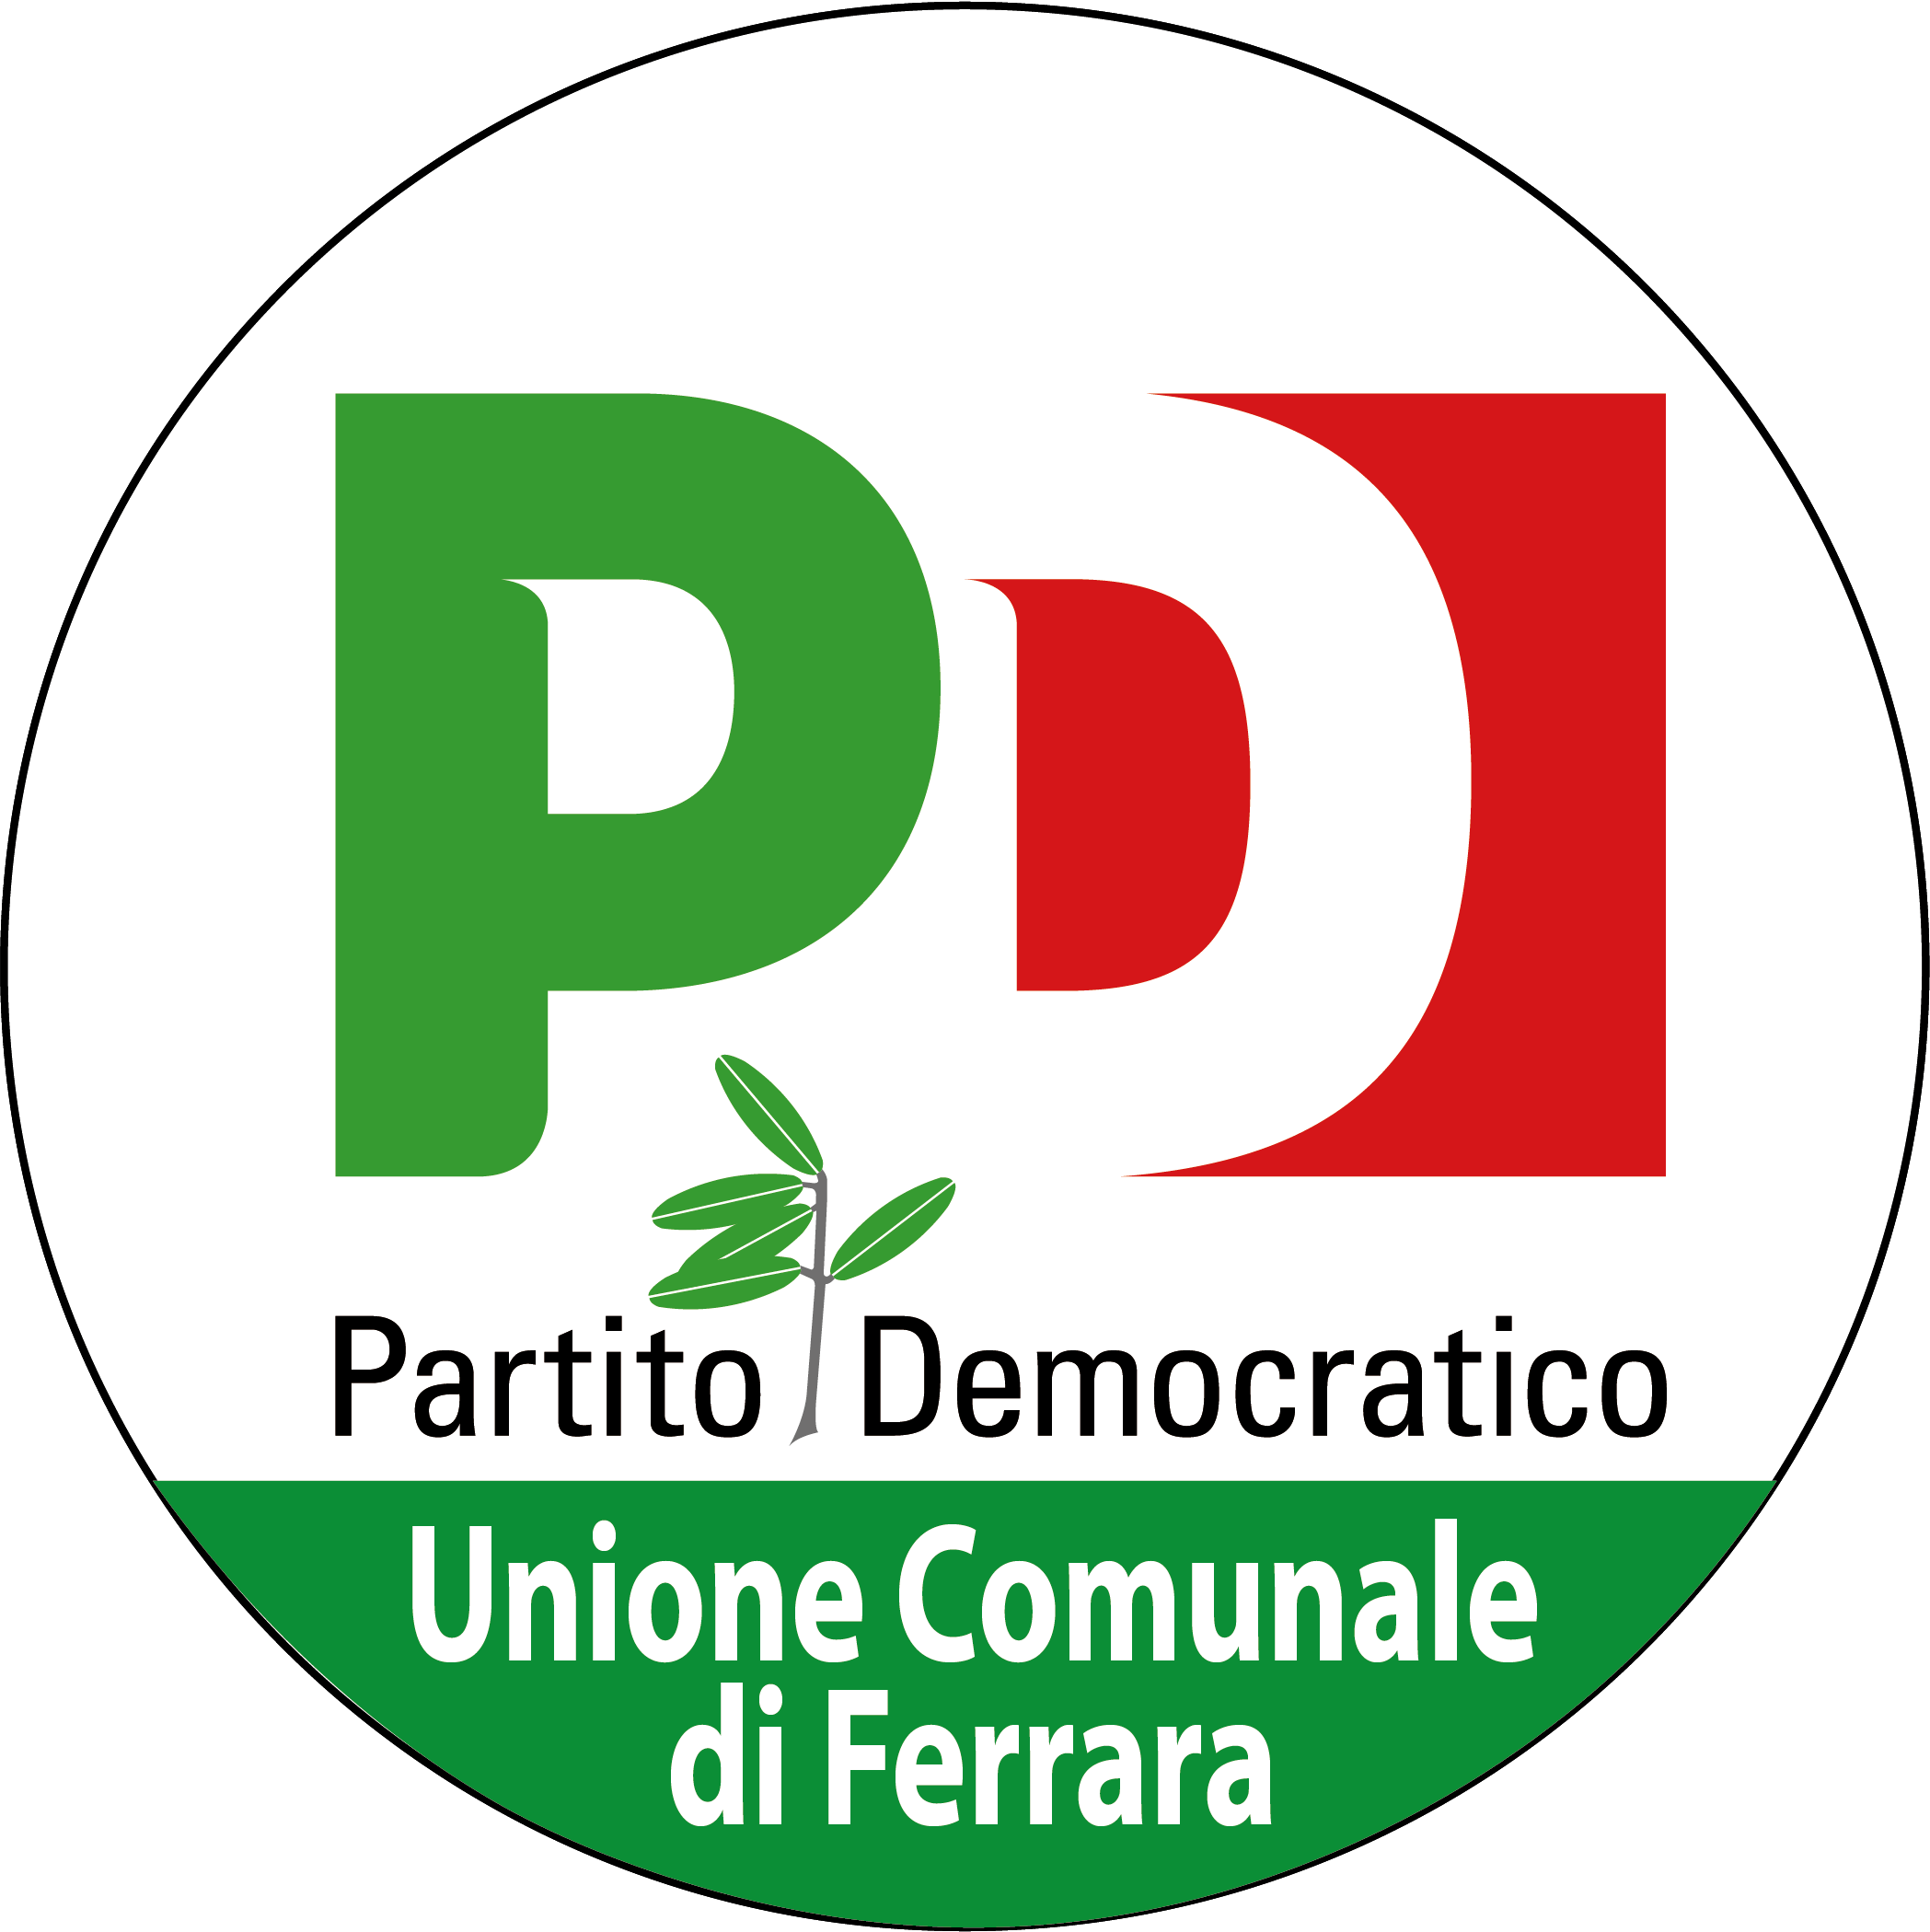 Featured image for “Comunicazione Segretario Partito Democratico dell’unione comunale di Ferrara per annunciare assemblee dei circoli.”